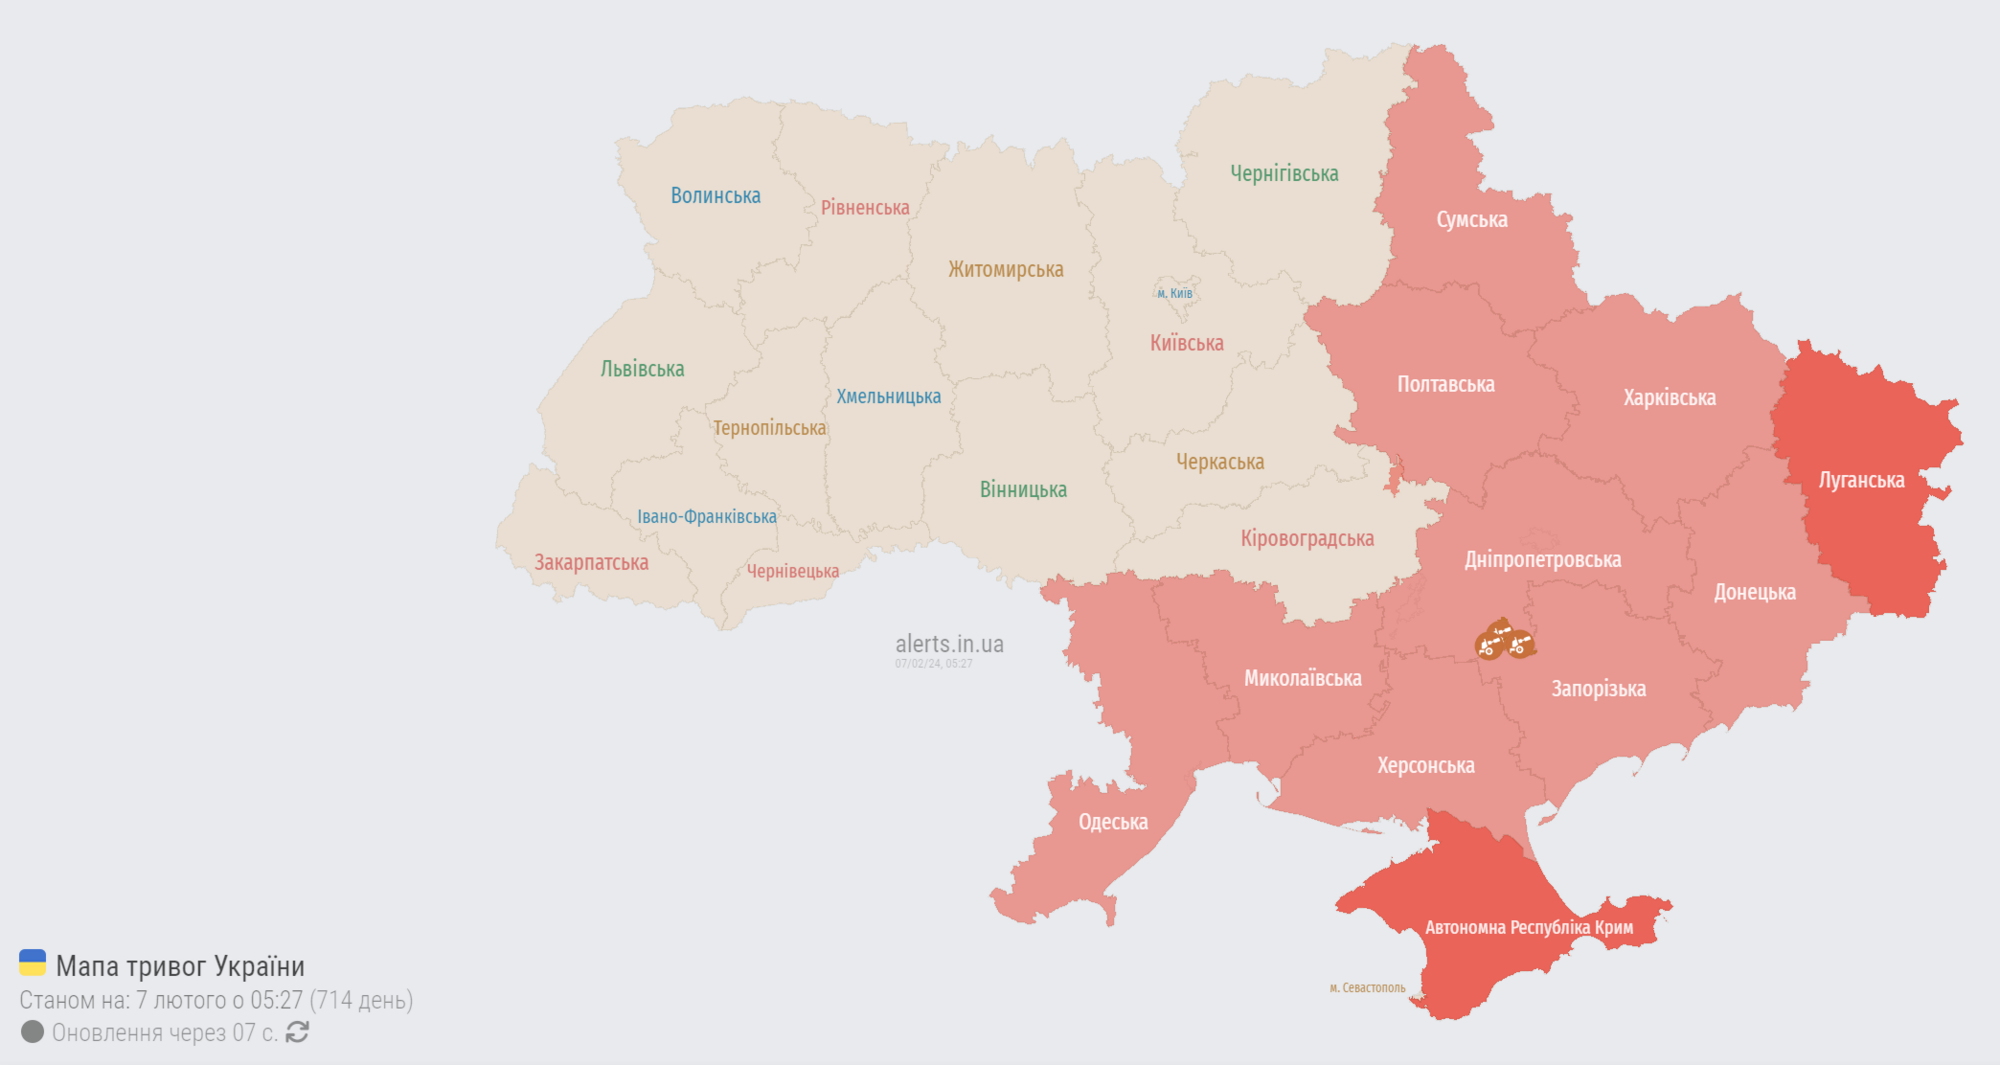 Вся Украина была "красной": во время тревоги раздались взрывы в разных областях